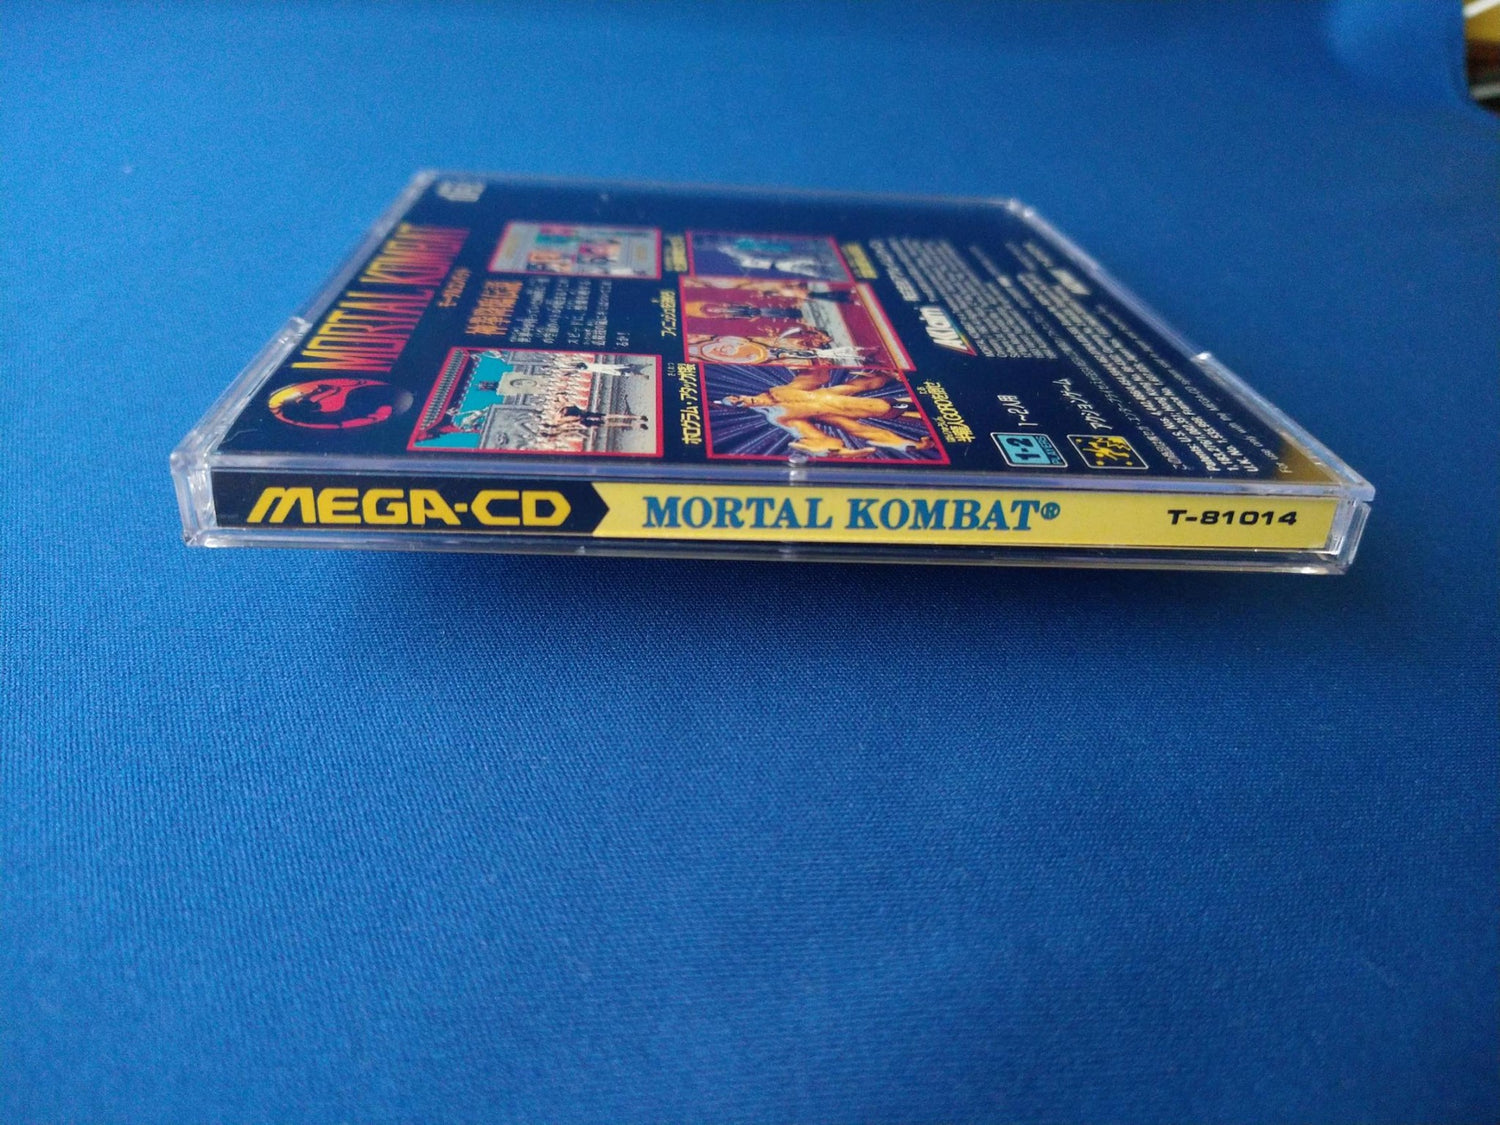 MORTAL KOMBAT MEGA CD shooter game Disk, Manual, Box set, Working 